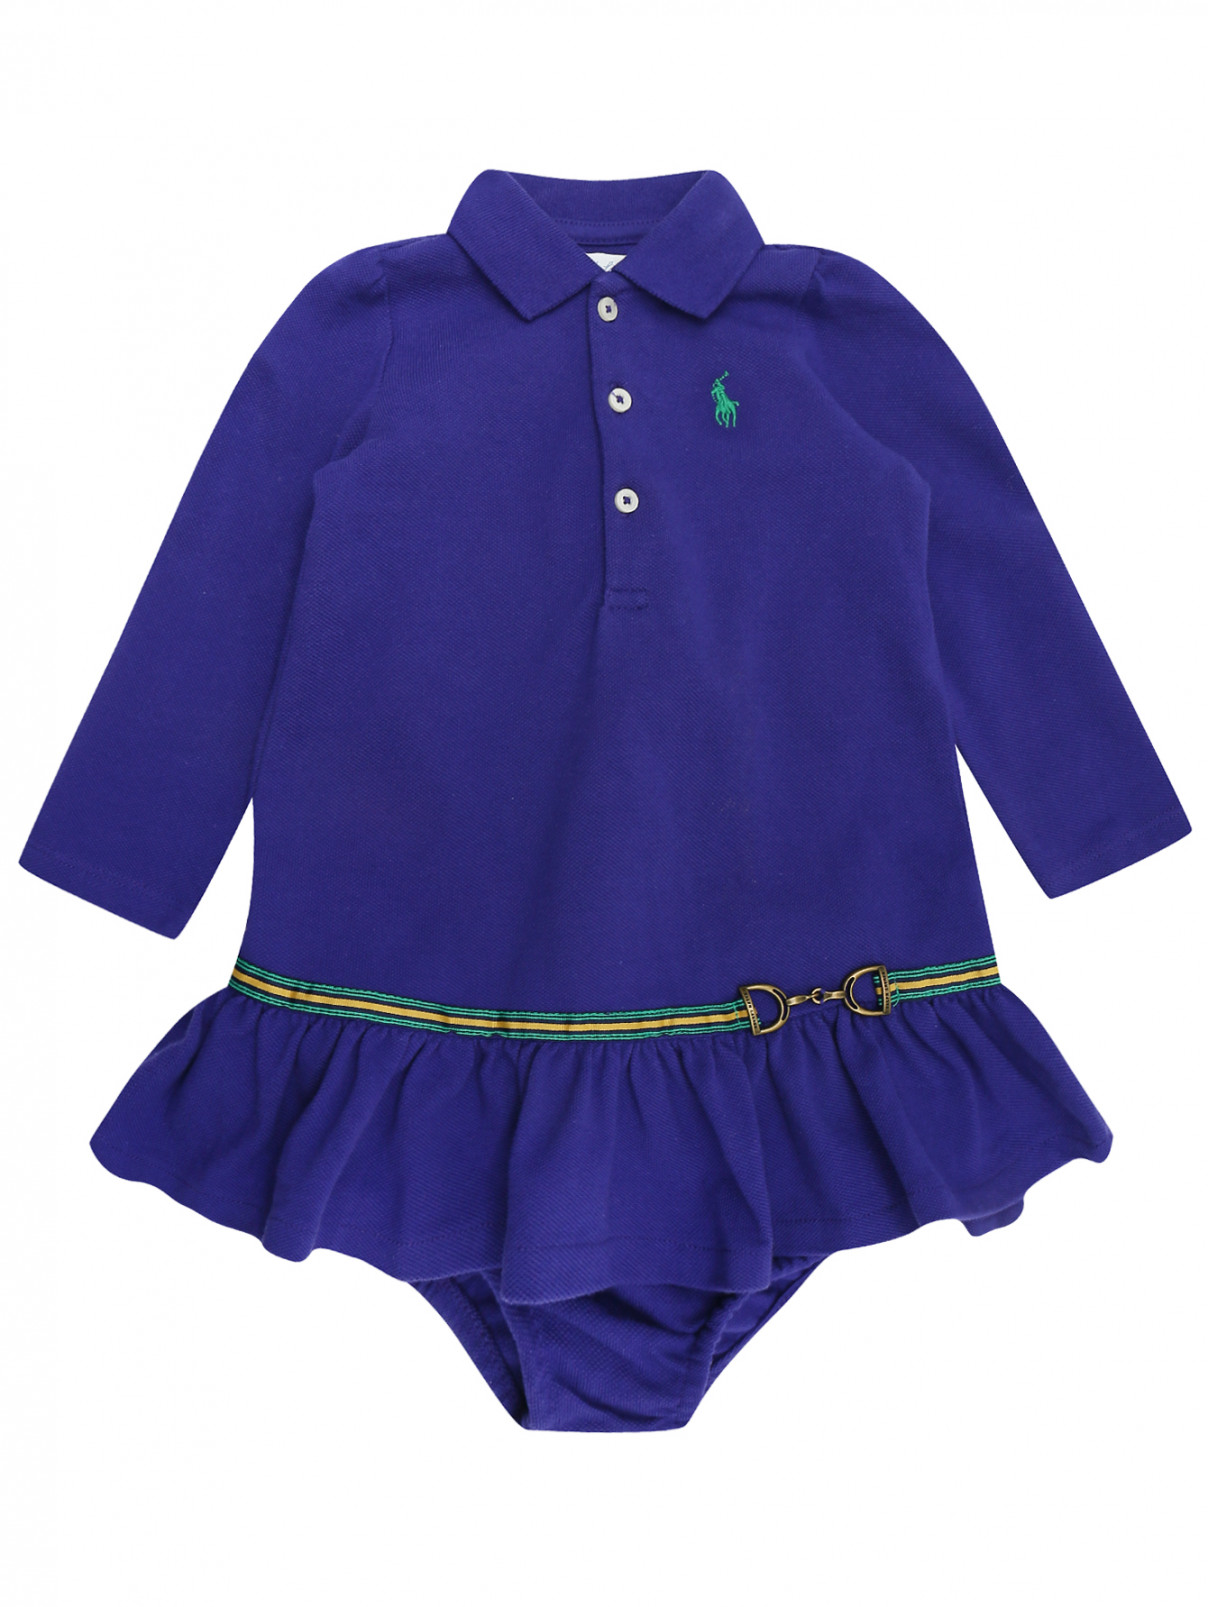 Платье из фактурного хлопка с трусами Ralph Lauren  –  Общий вид  – Цвет:  Фиолетовый